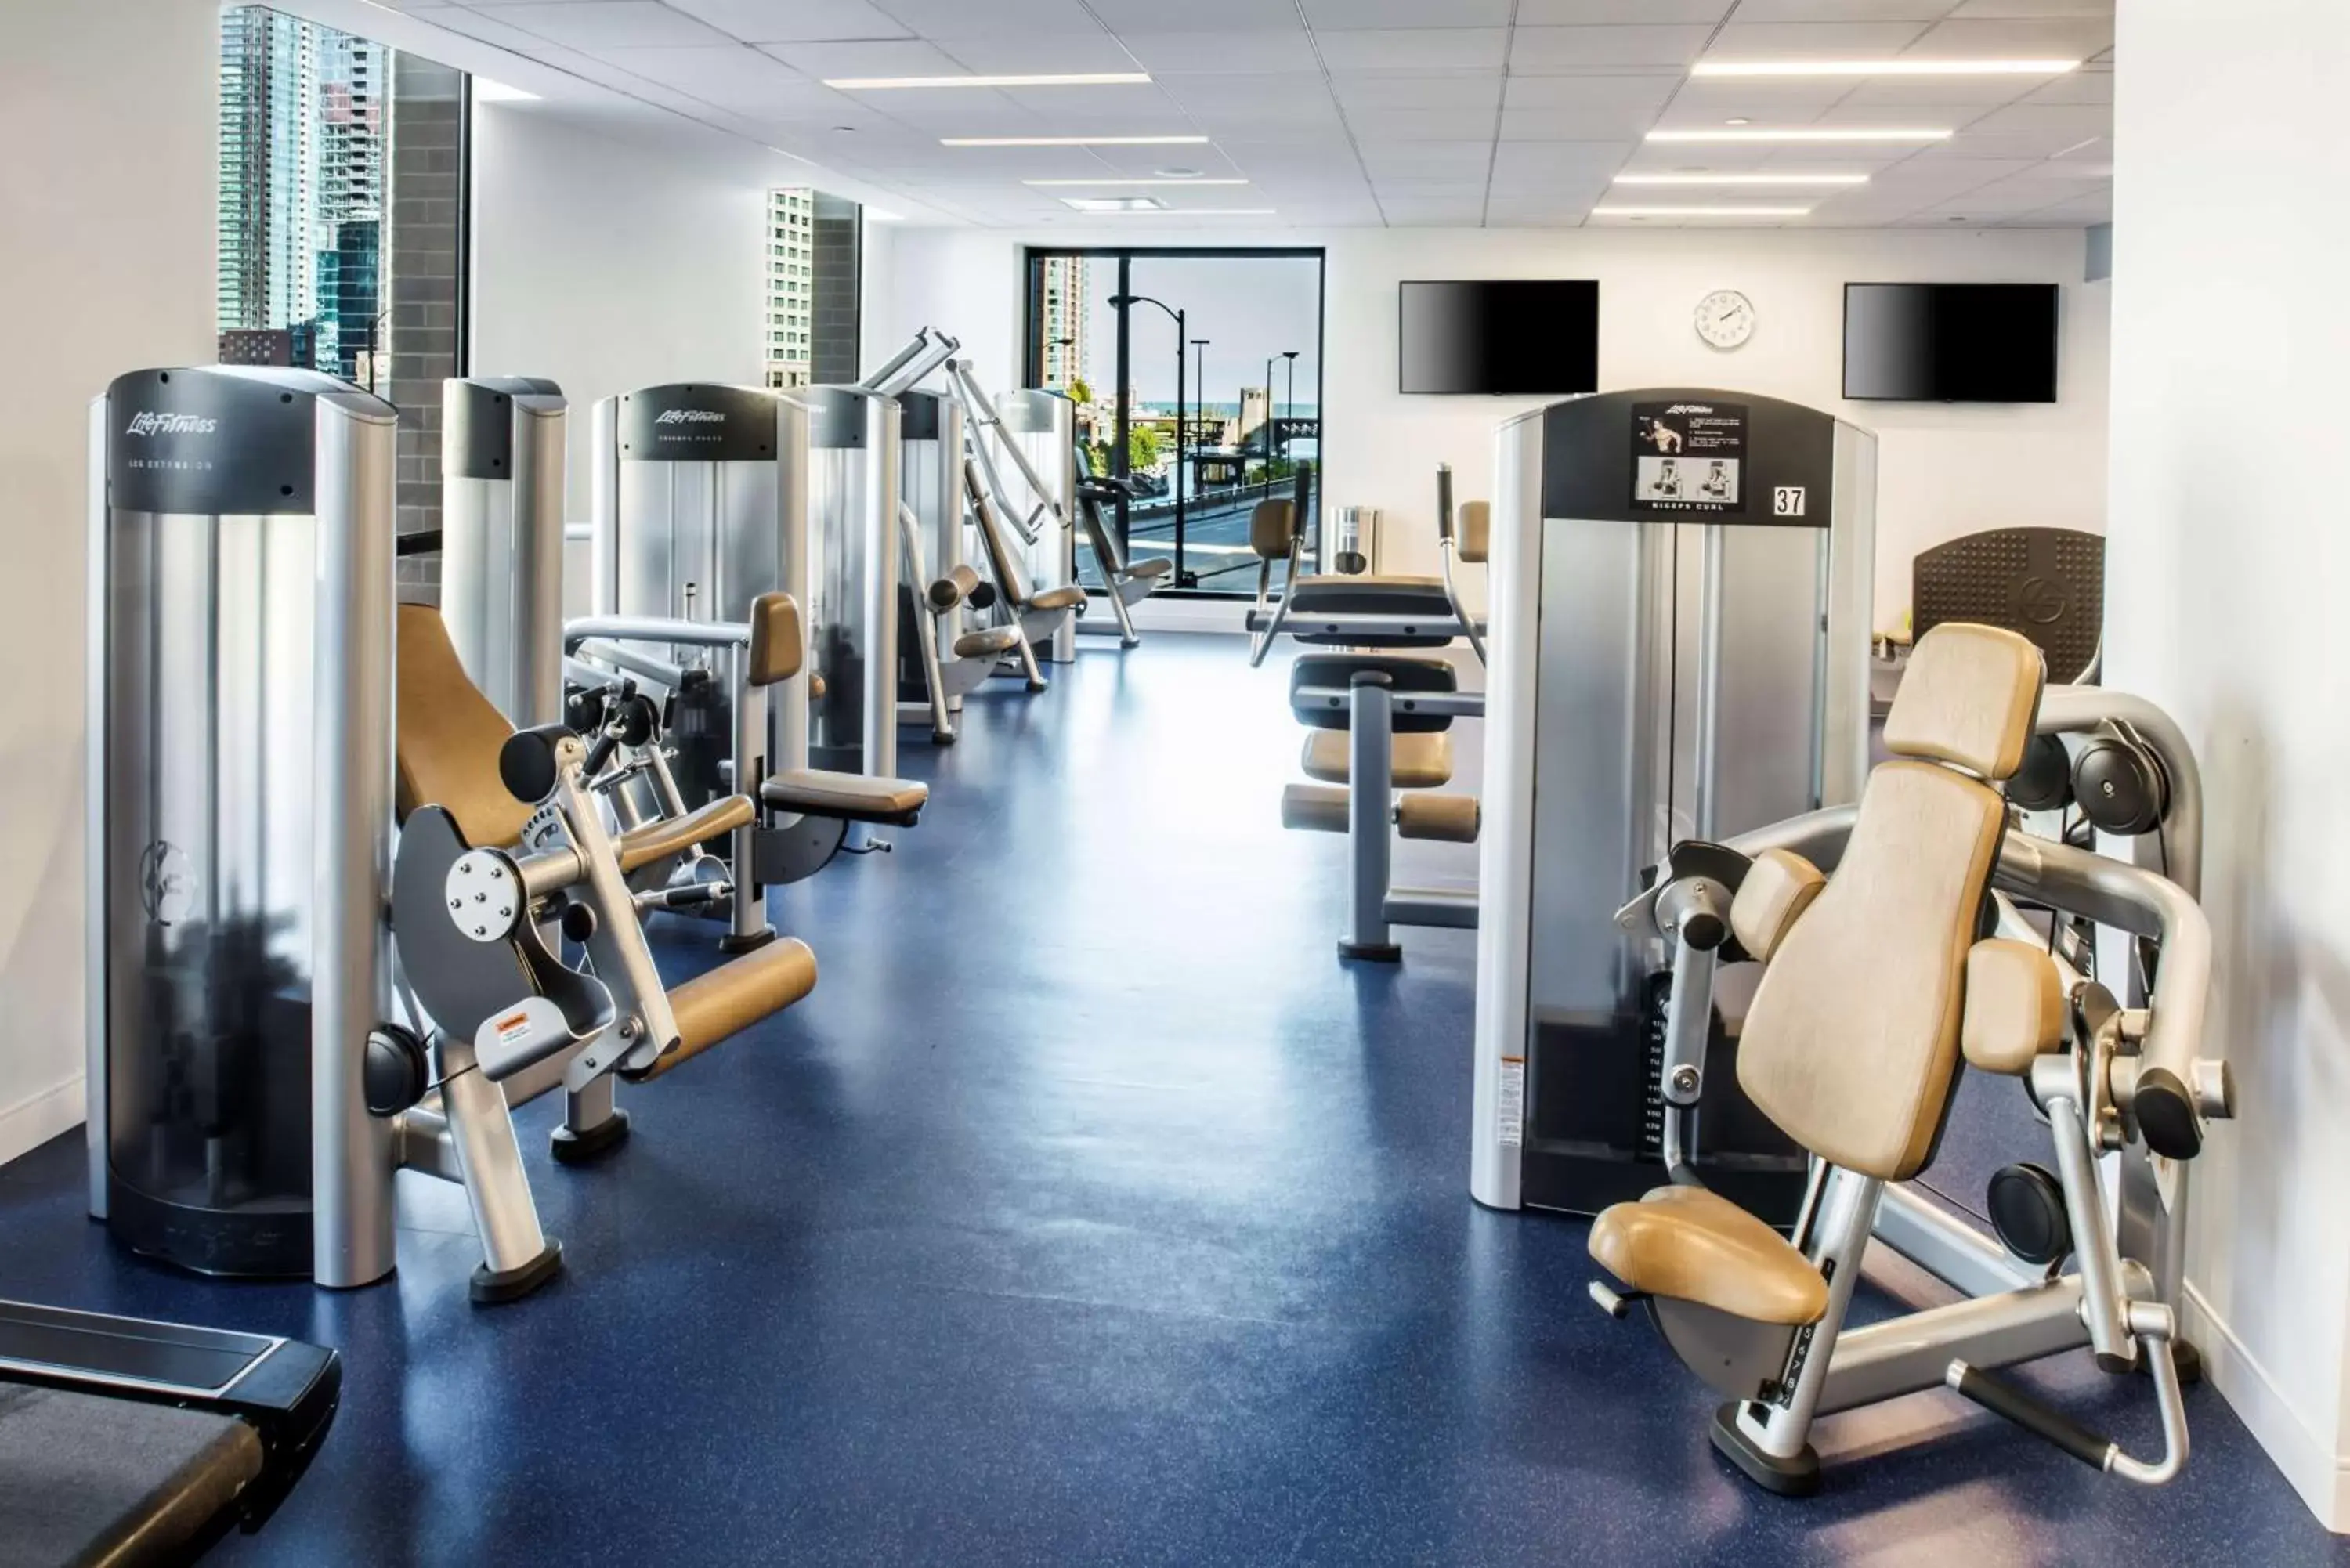 Activities, Fitness Center/Facilities in Hyatt Regency Chicago